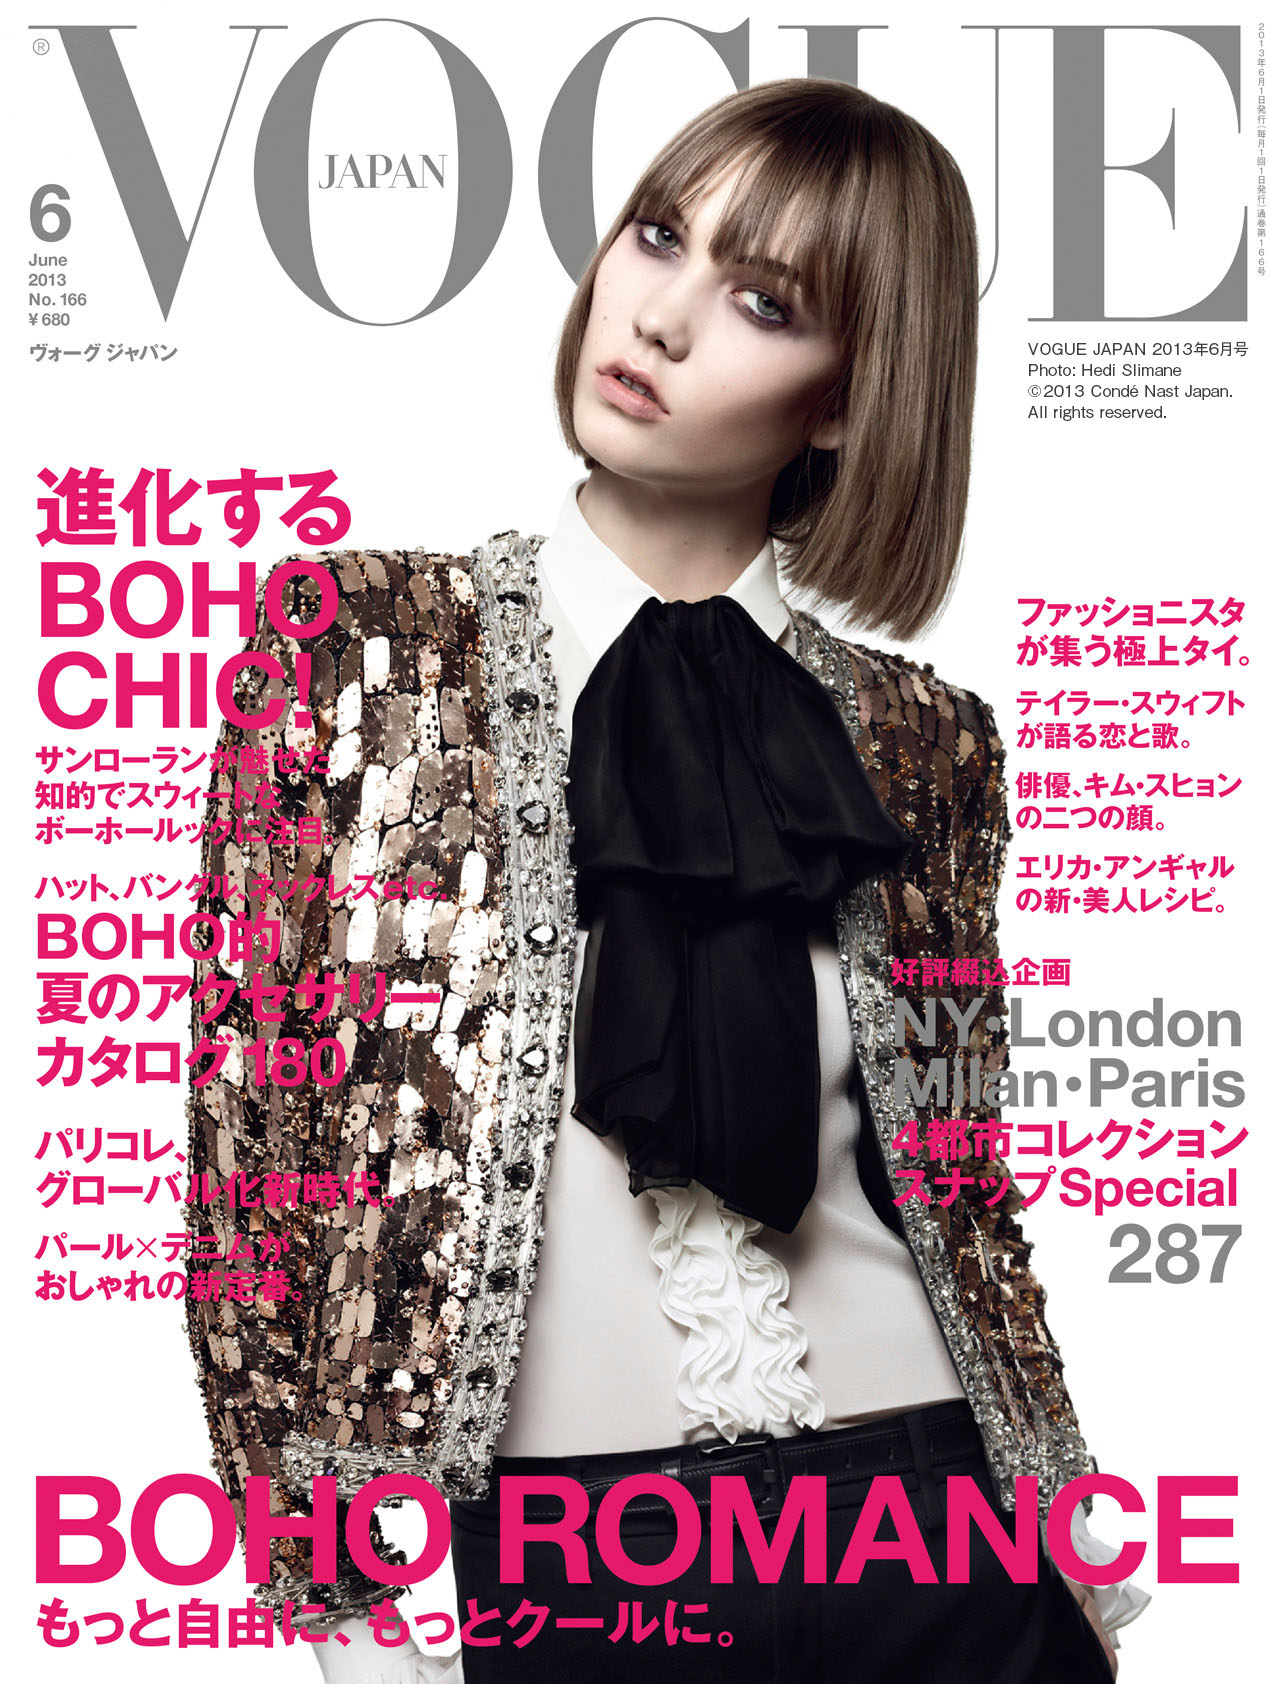 最旬トレンド ボーホー スタイル徹底検証 4都市コレクションスナップ大特集 Vogue Japan 6月号 コンデナスト ジャパンのプレスリリース